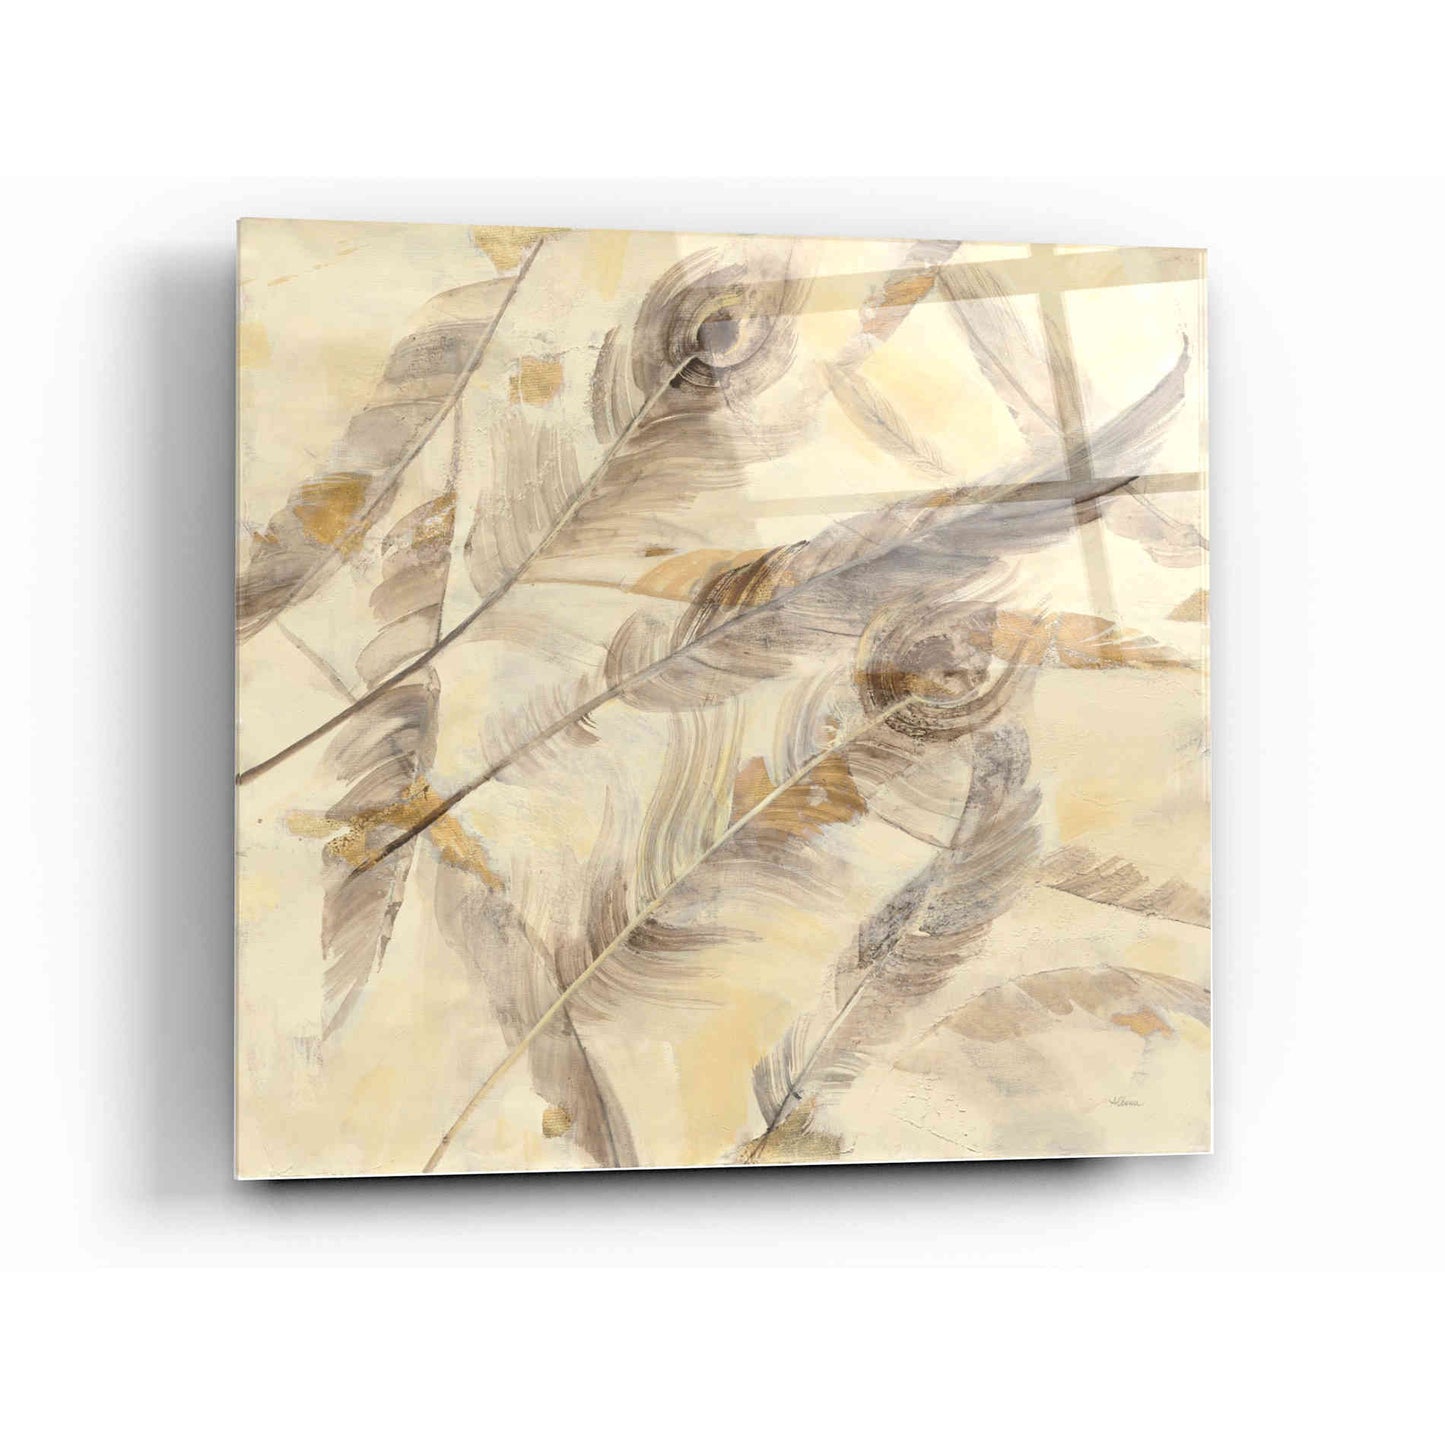 Epic Art 'Falling Feathers' by Albena Hristova, Acrylic Glass Wall Art,12x12